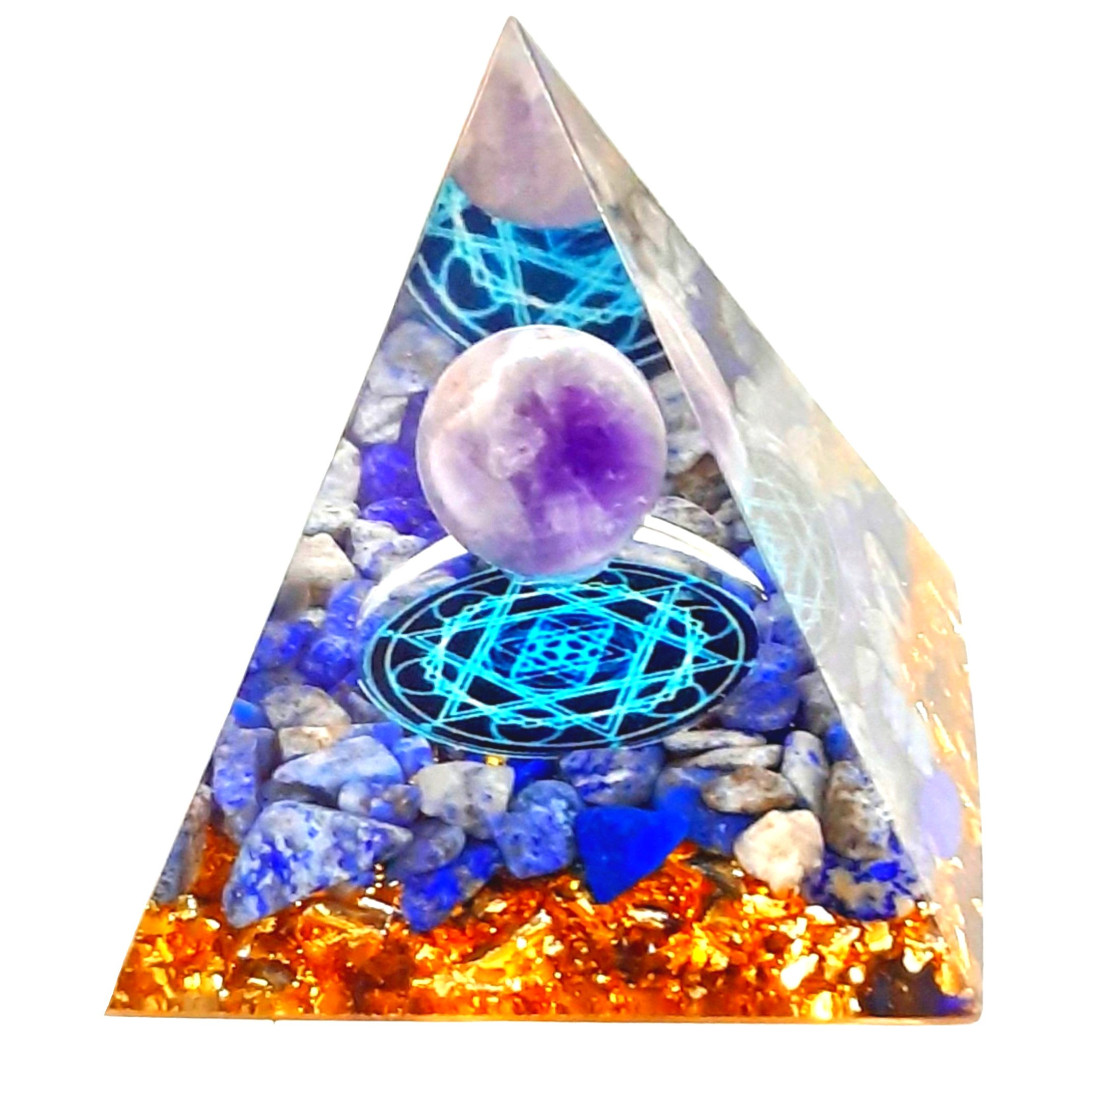 Pyramide orgonite orgone en résine et boule améthyste et galets lapis lazuli orgo12 6cm